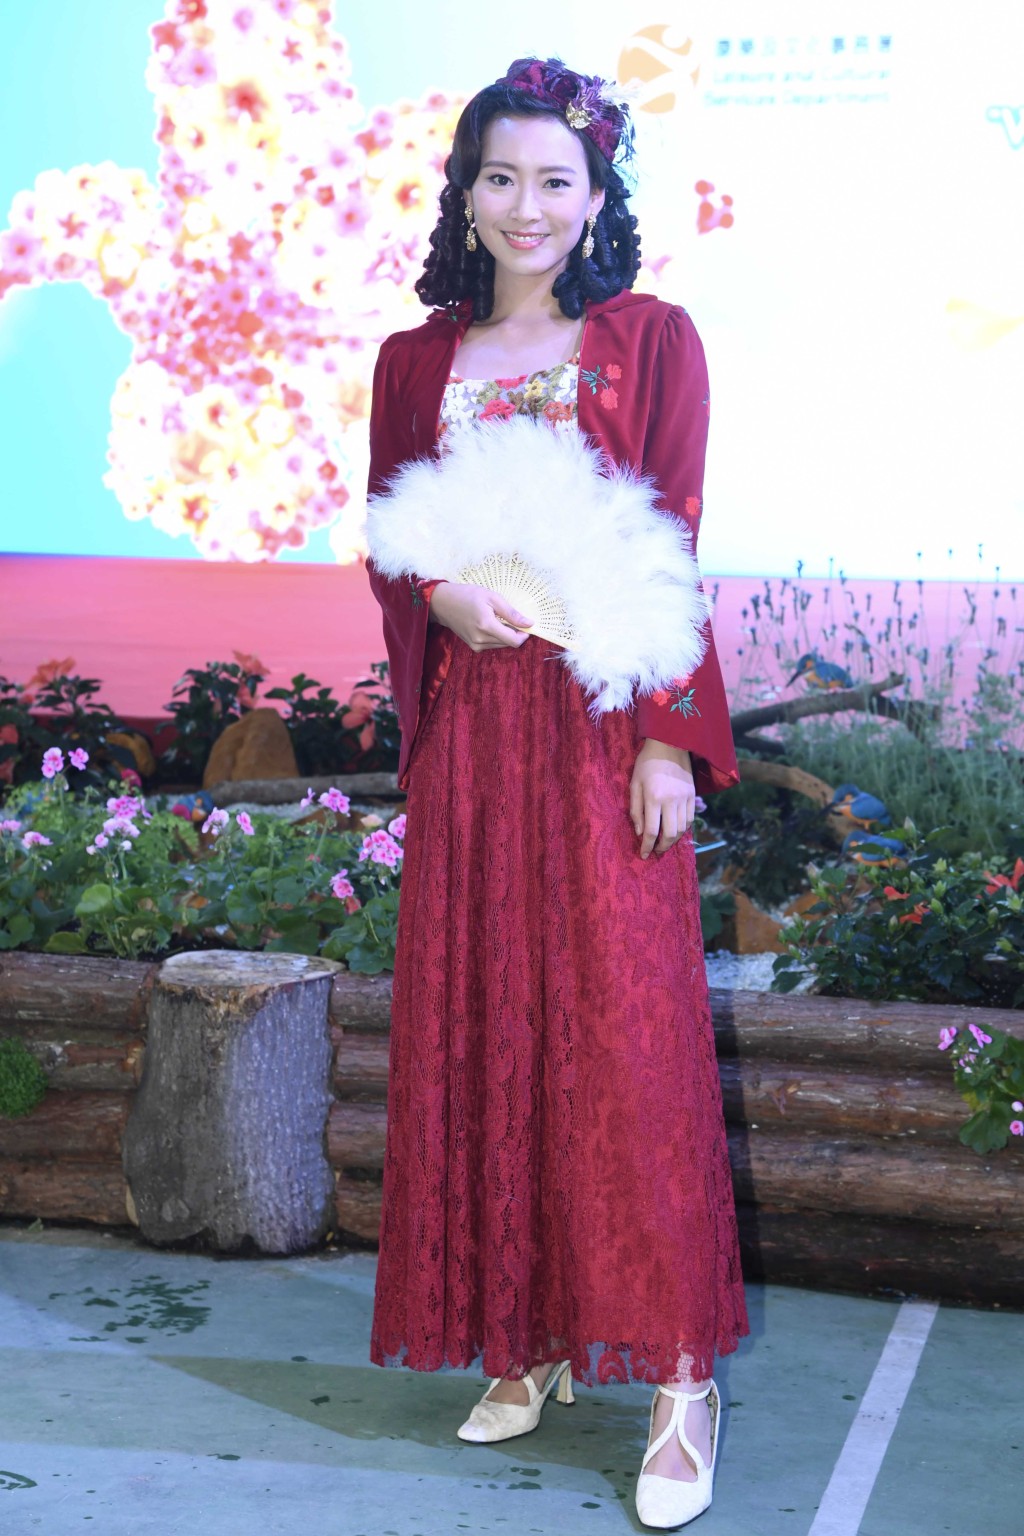 香港小姐陳靜堯身穿西式宮廷服出席維多利亞公園支持2019年香港花卉展覽“大紅花說願”攝影比賽活動。